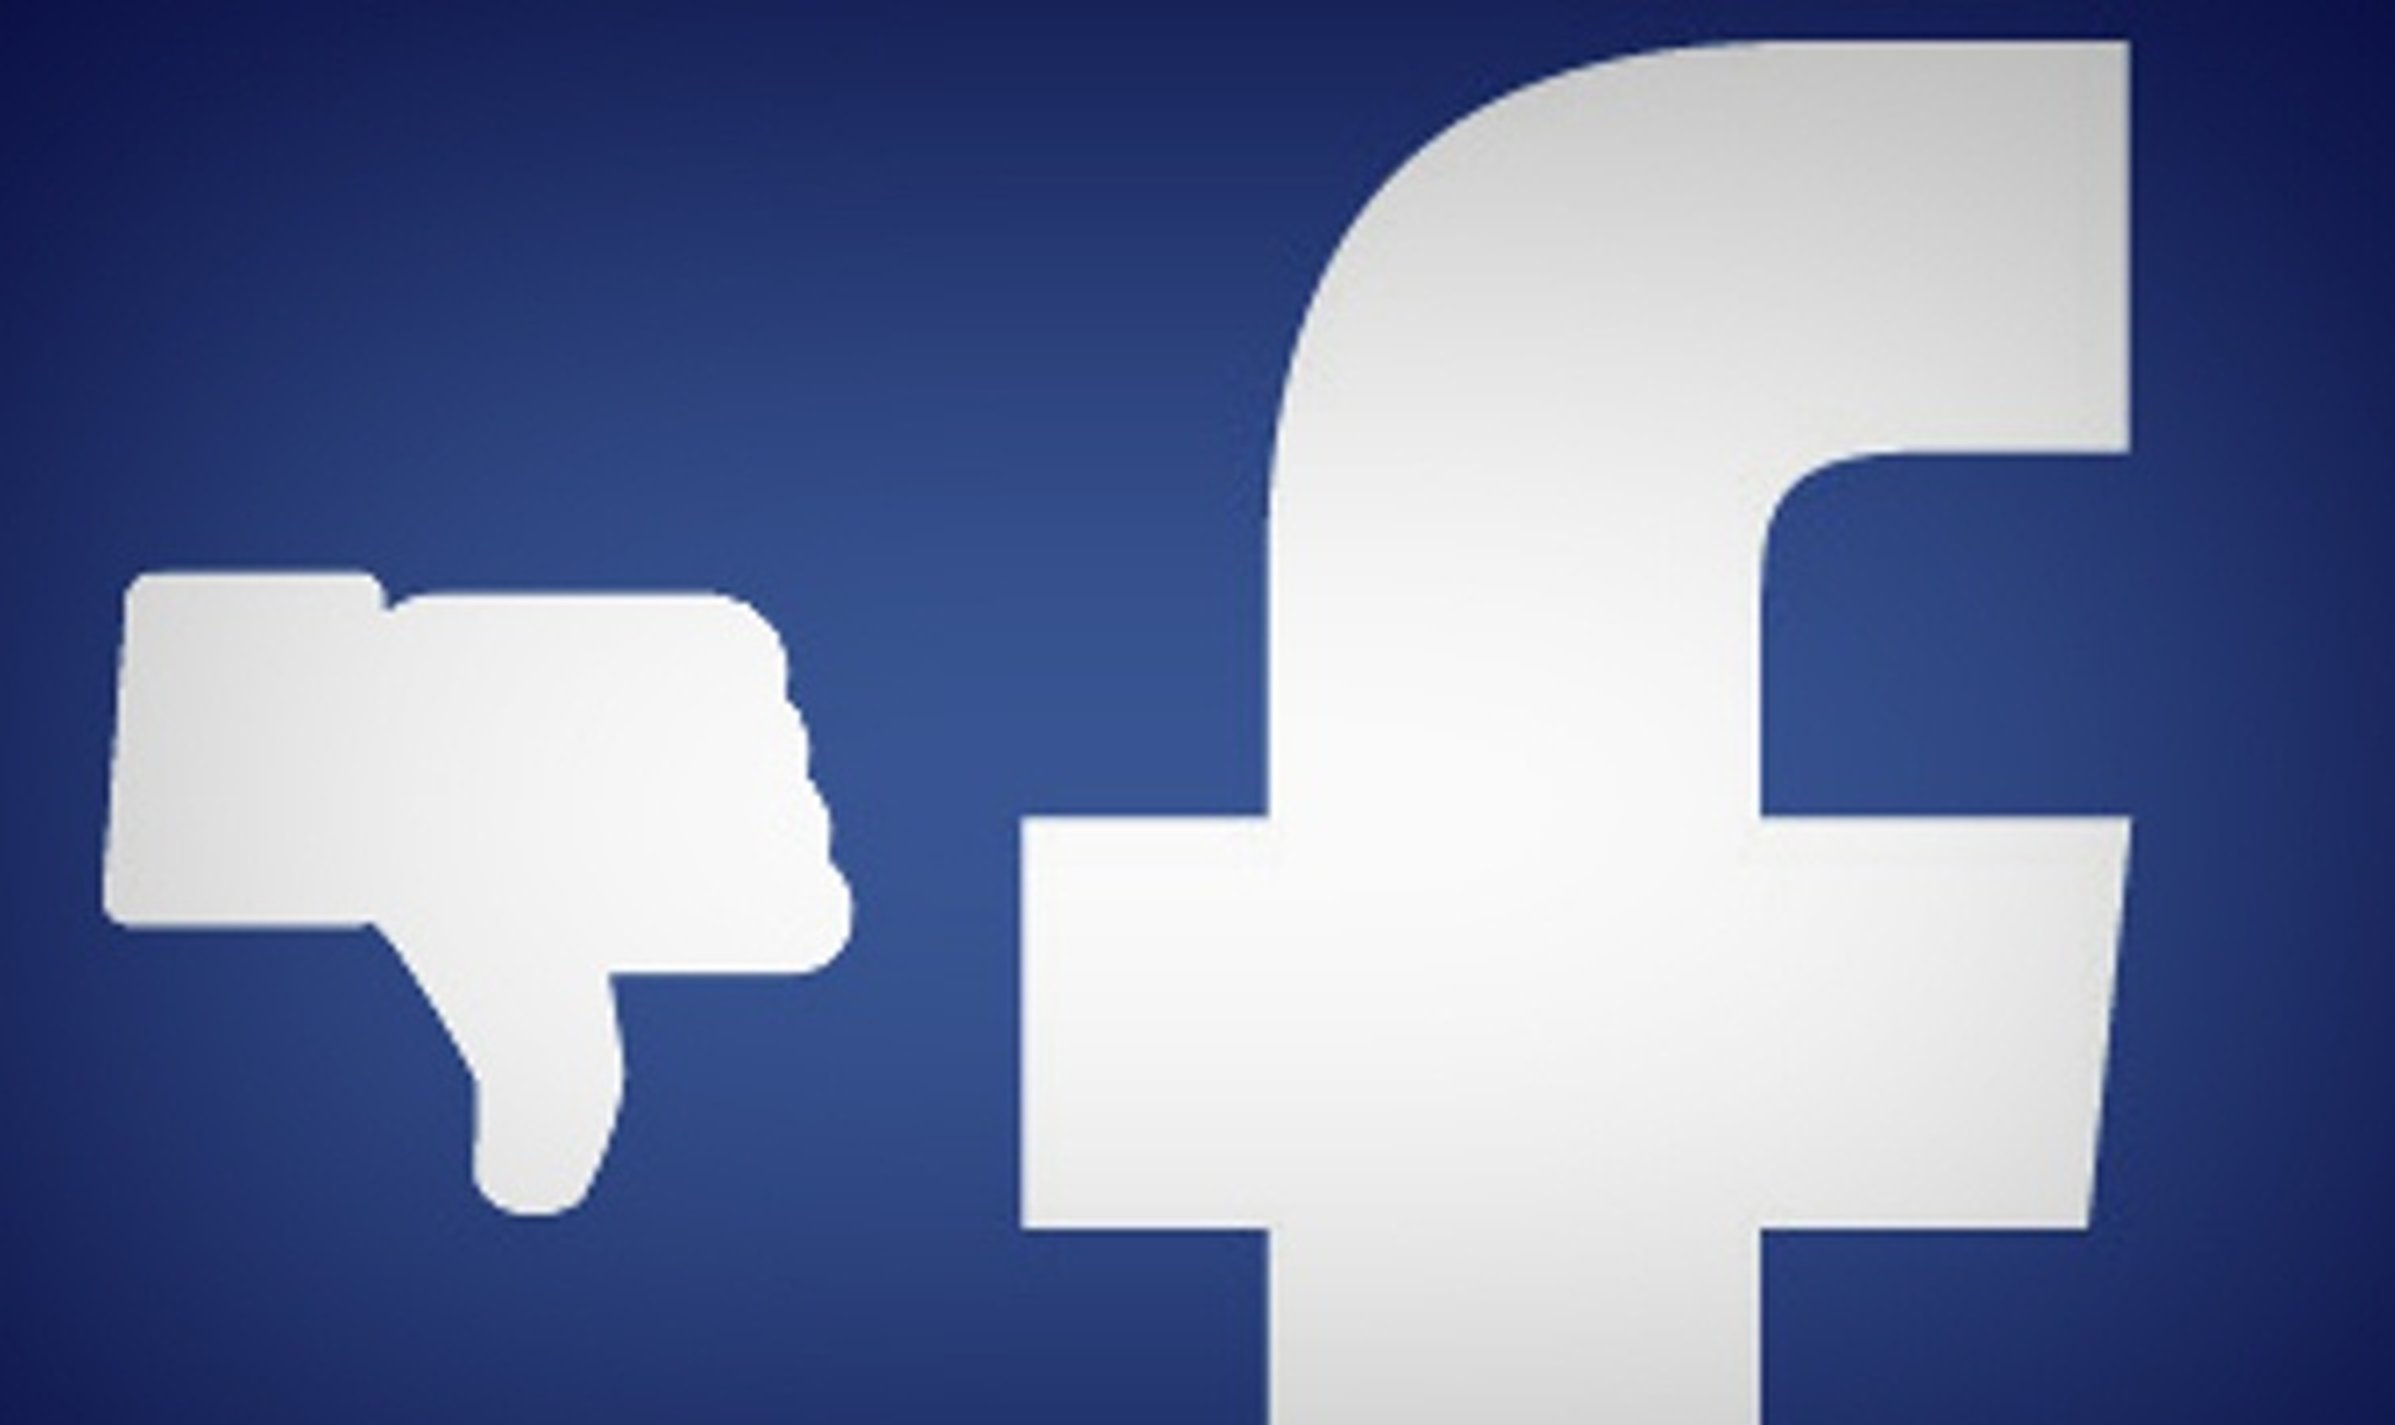 Relatório de comissão parlamentar britânica acusa a rede social Facebook de violar leis de privacidade e concorrência e obstruir investigação às suas atividades